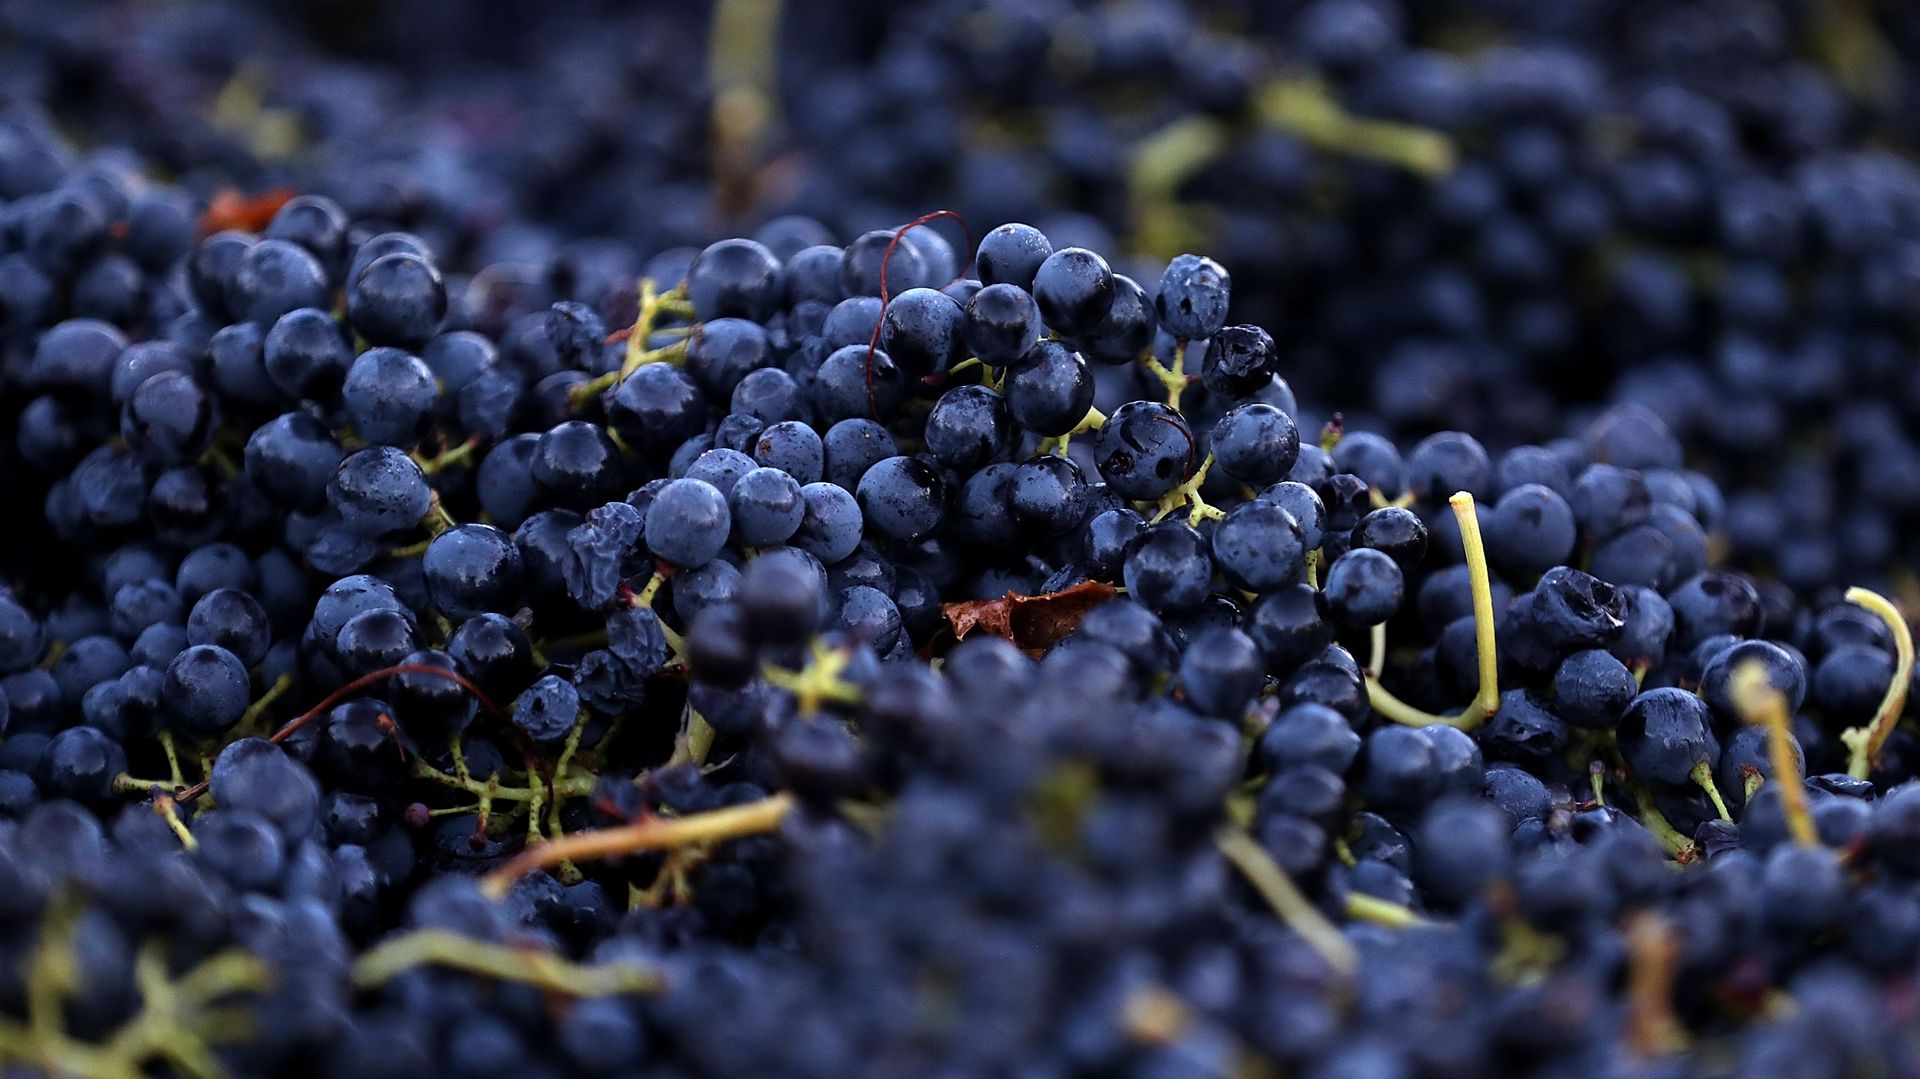 Avec le céleri, le raisin fait partie des aliments ayant le plus de résidus de pesticides selon une association écologiste française.